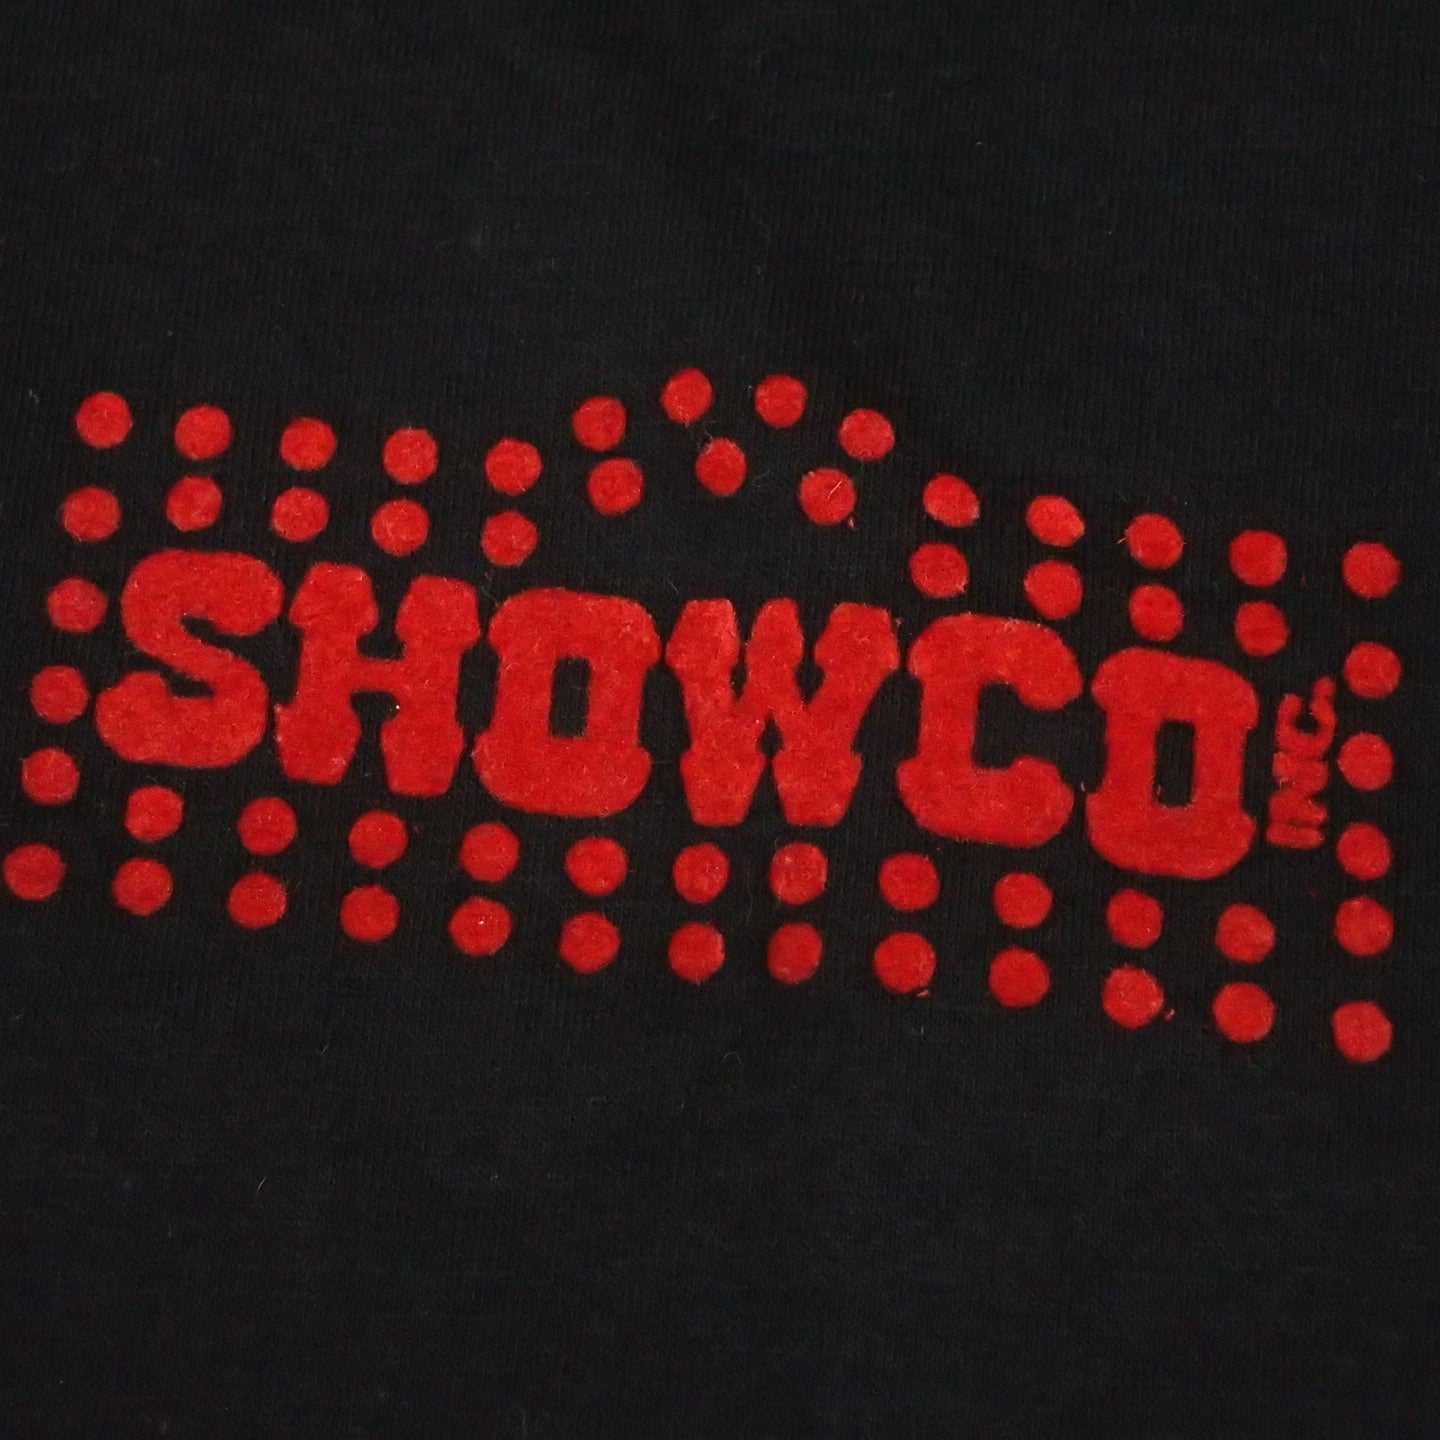 80s Van Halen T-shirt "Showco Tee"